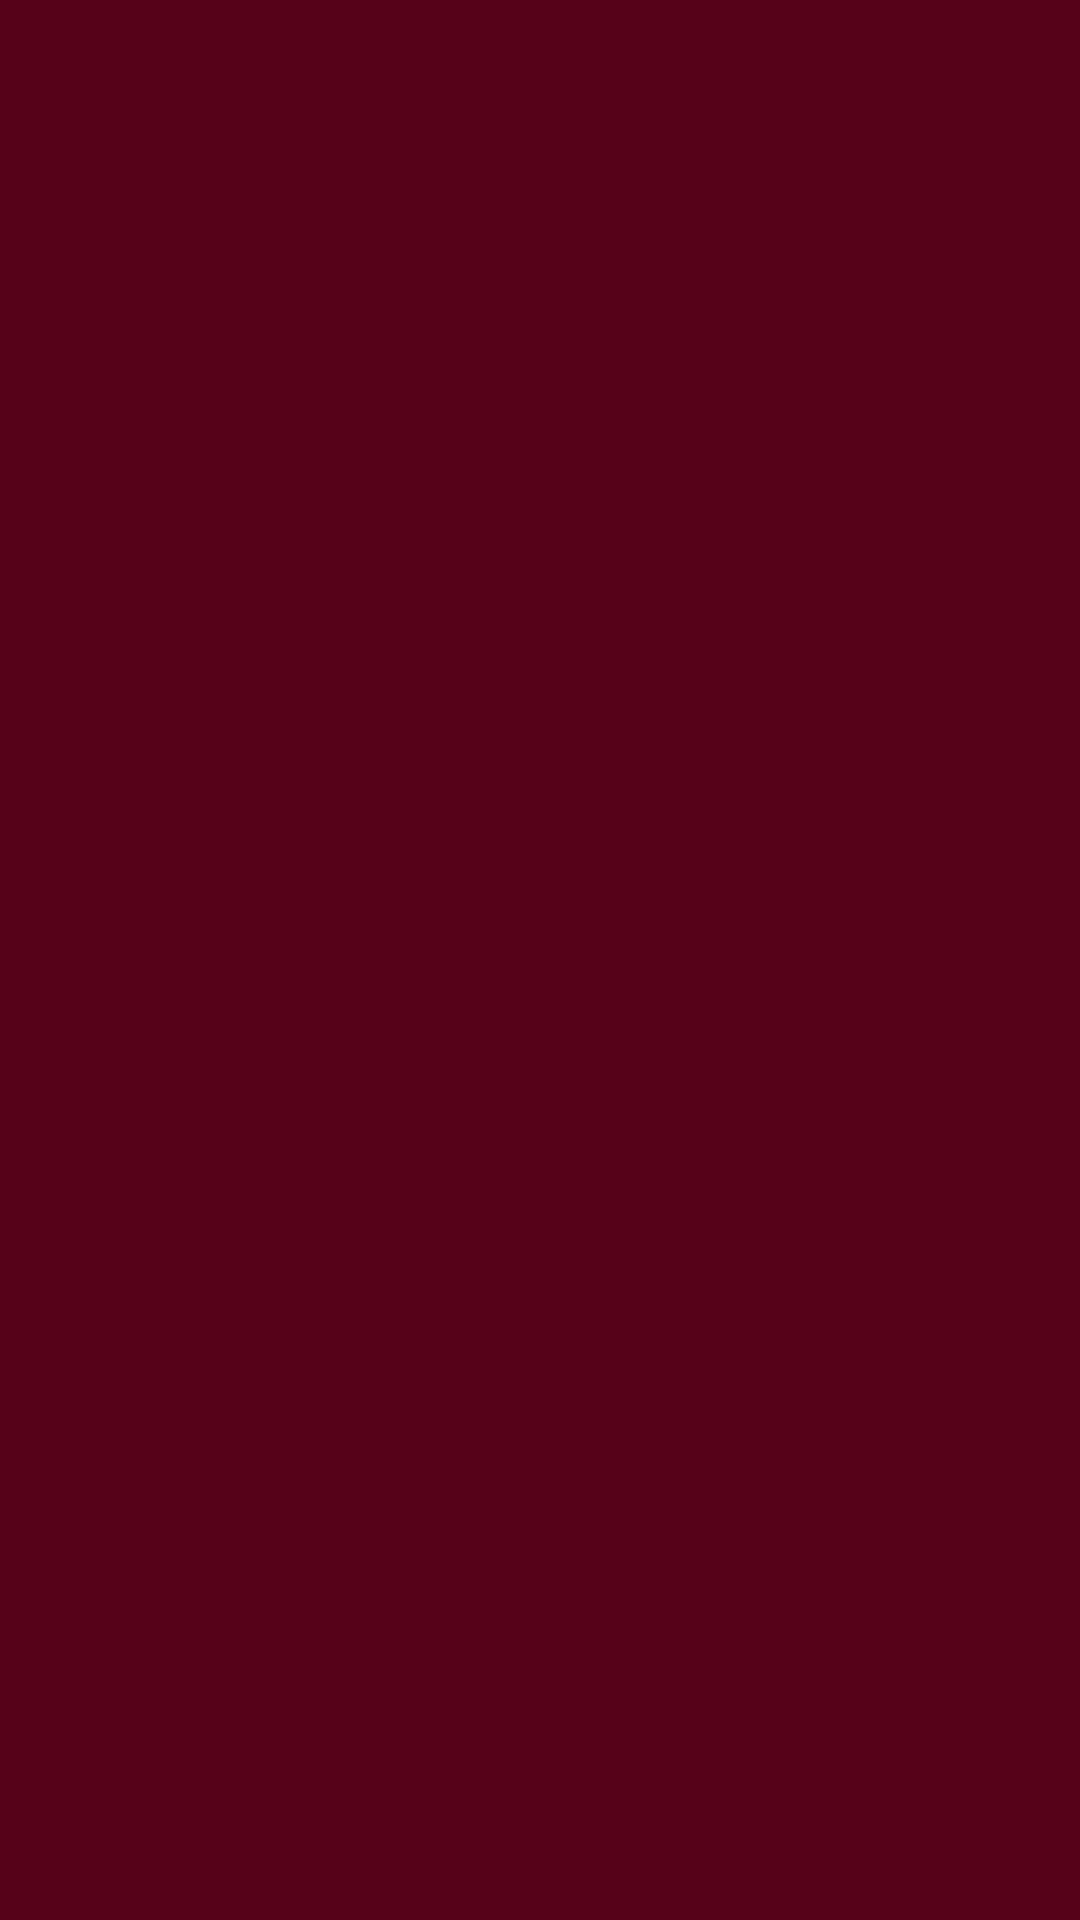 1080x1920 Dark Scarlet Solid Color Background